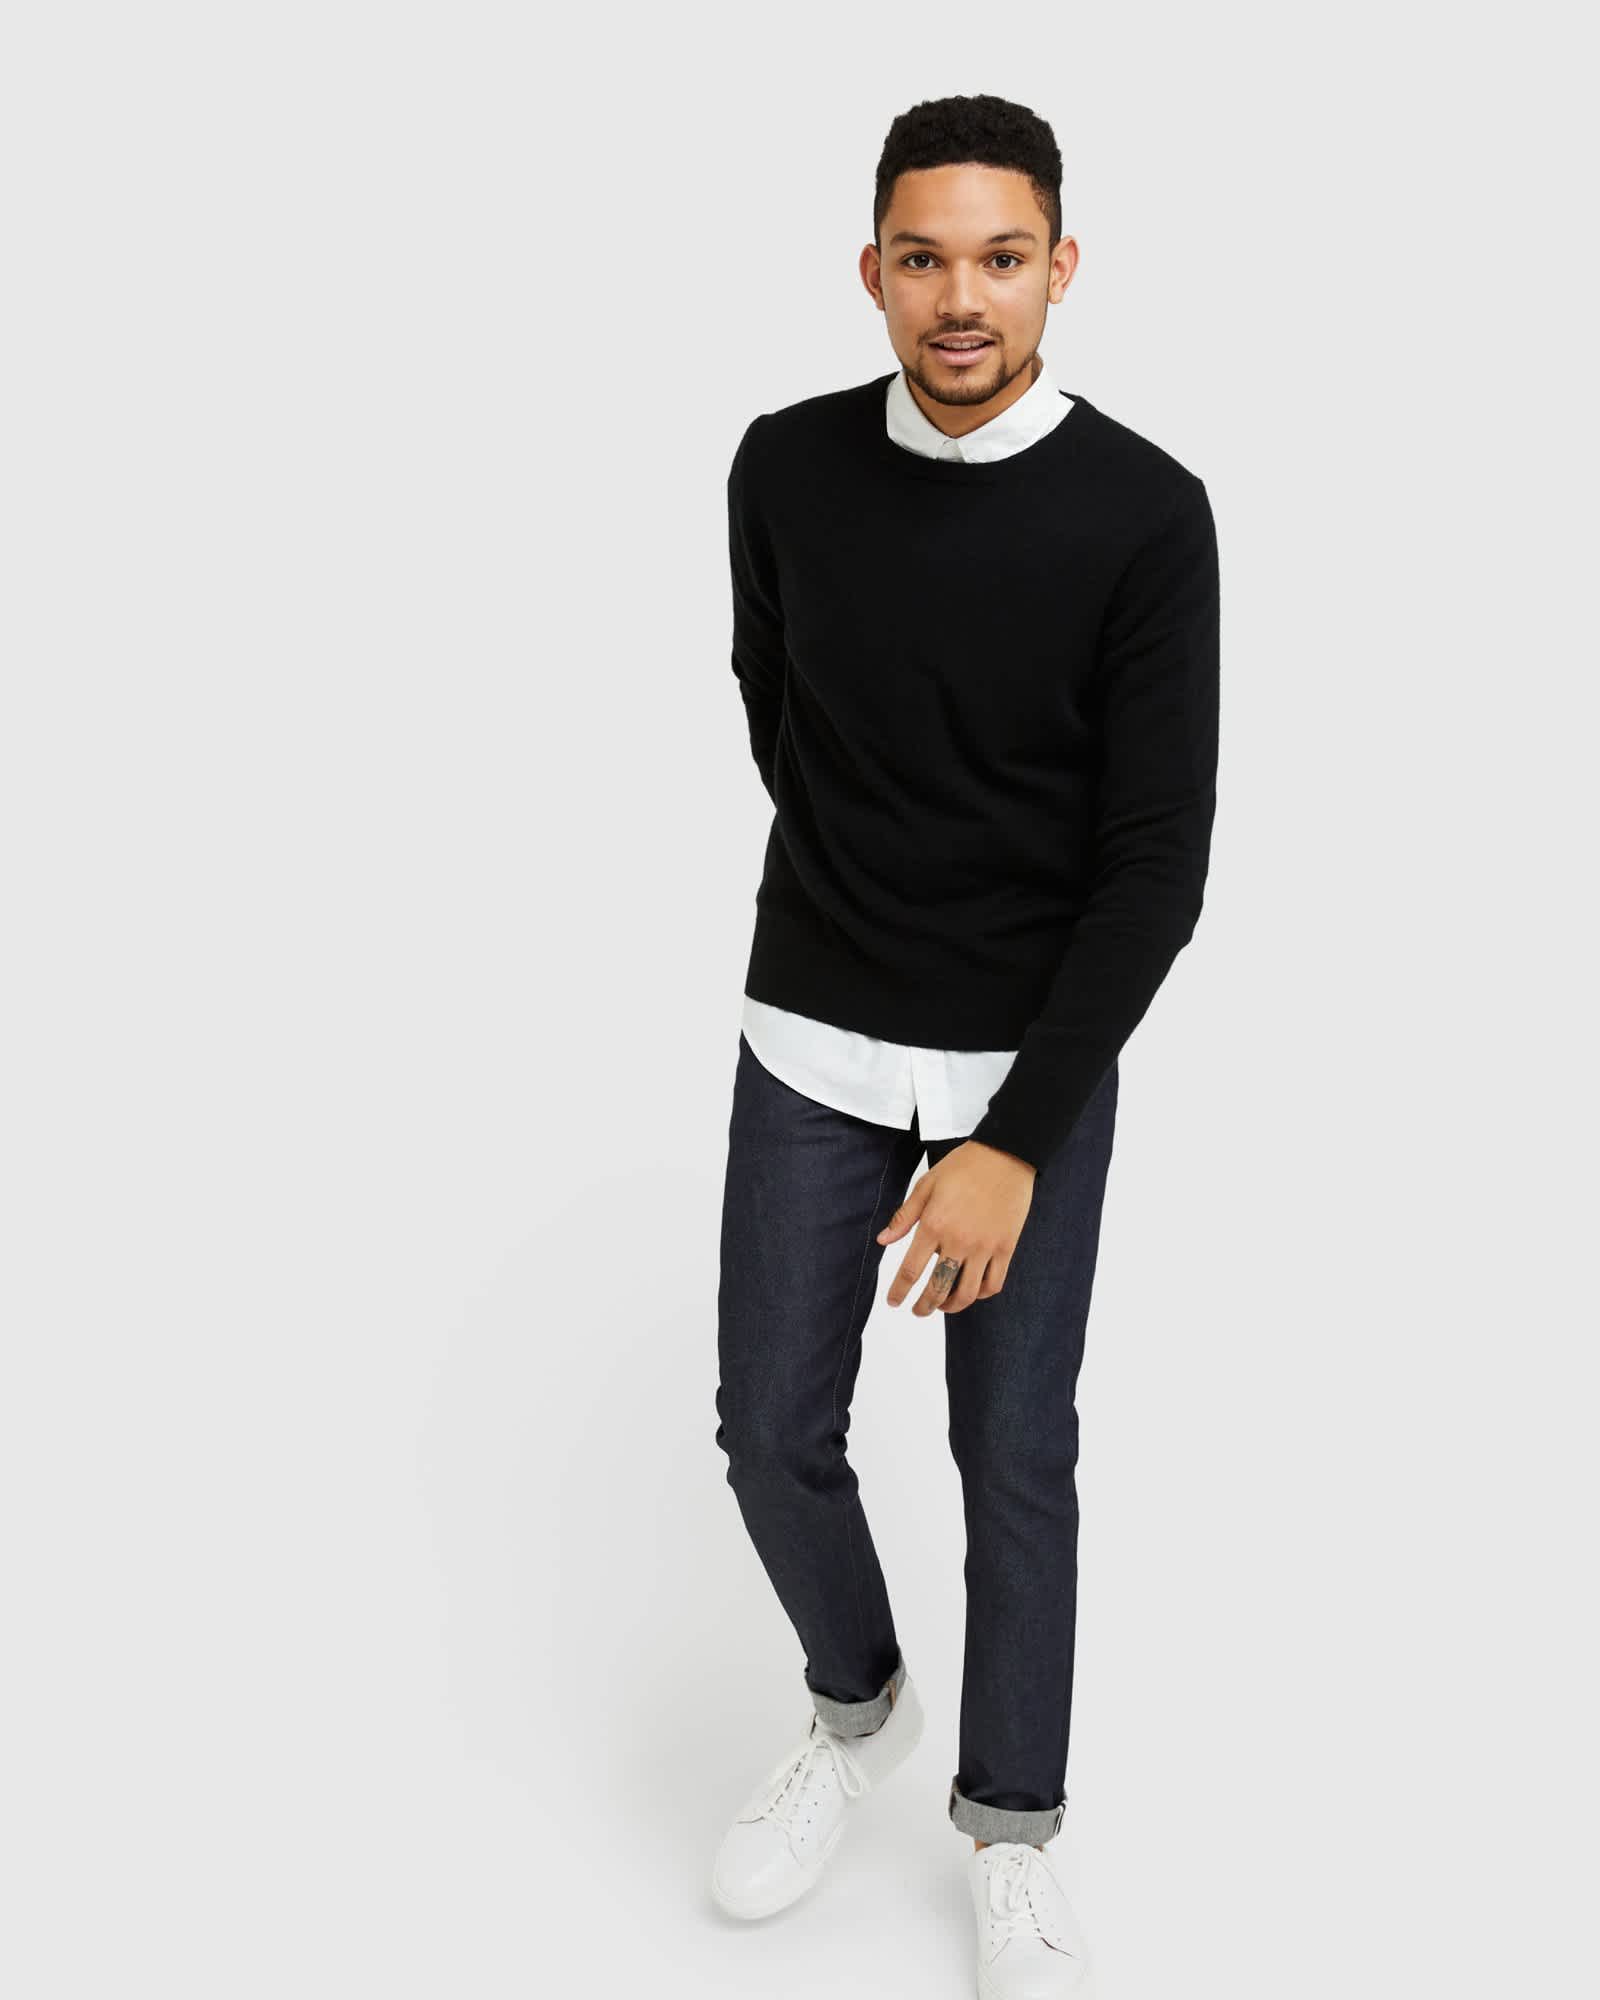 Man wearing black men's cashmere sweater walking